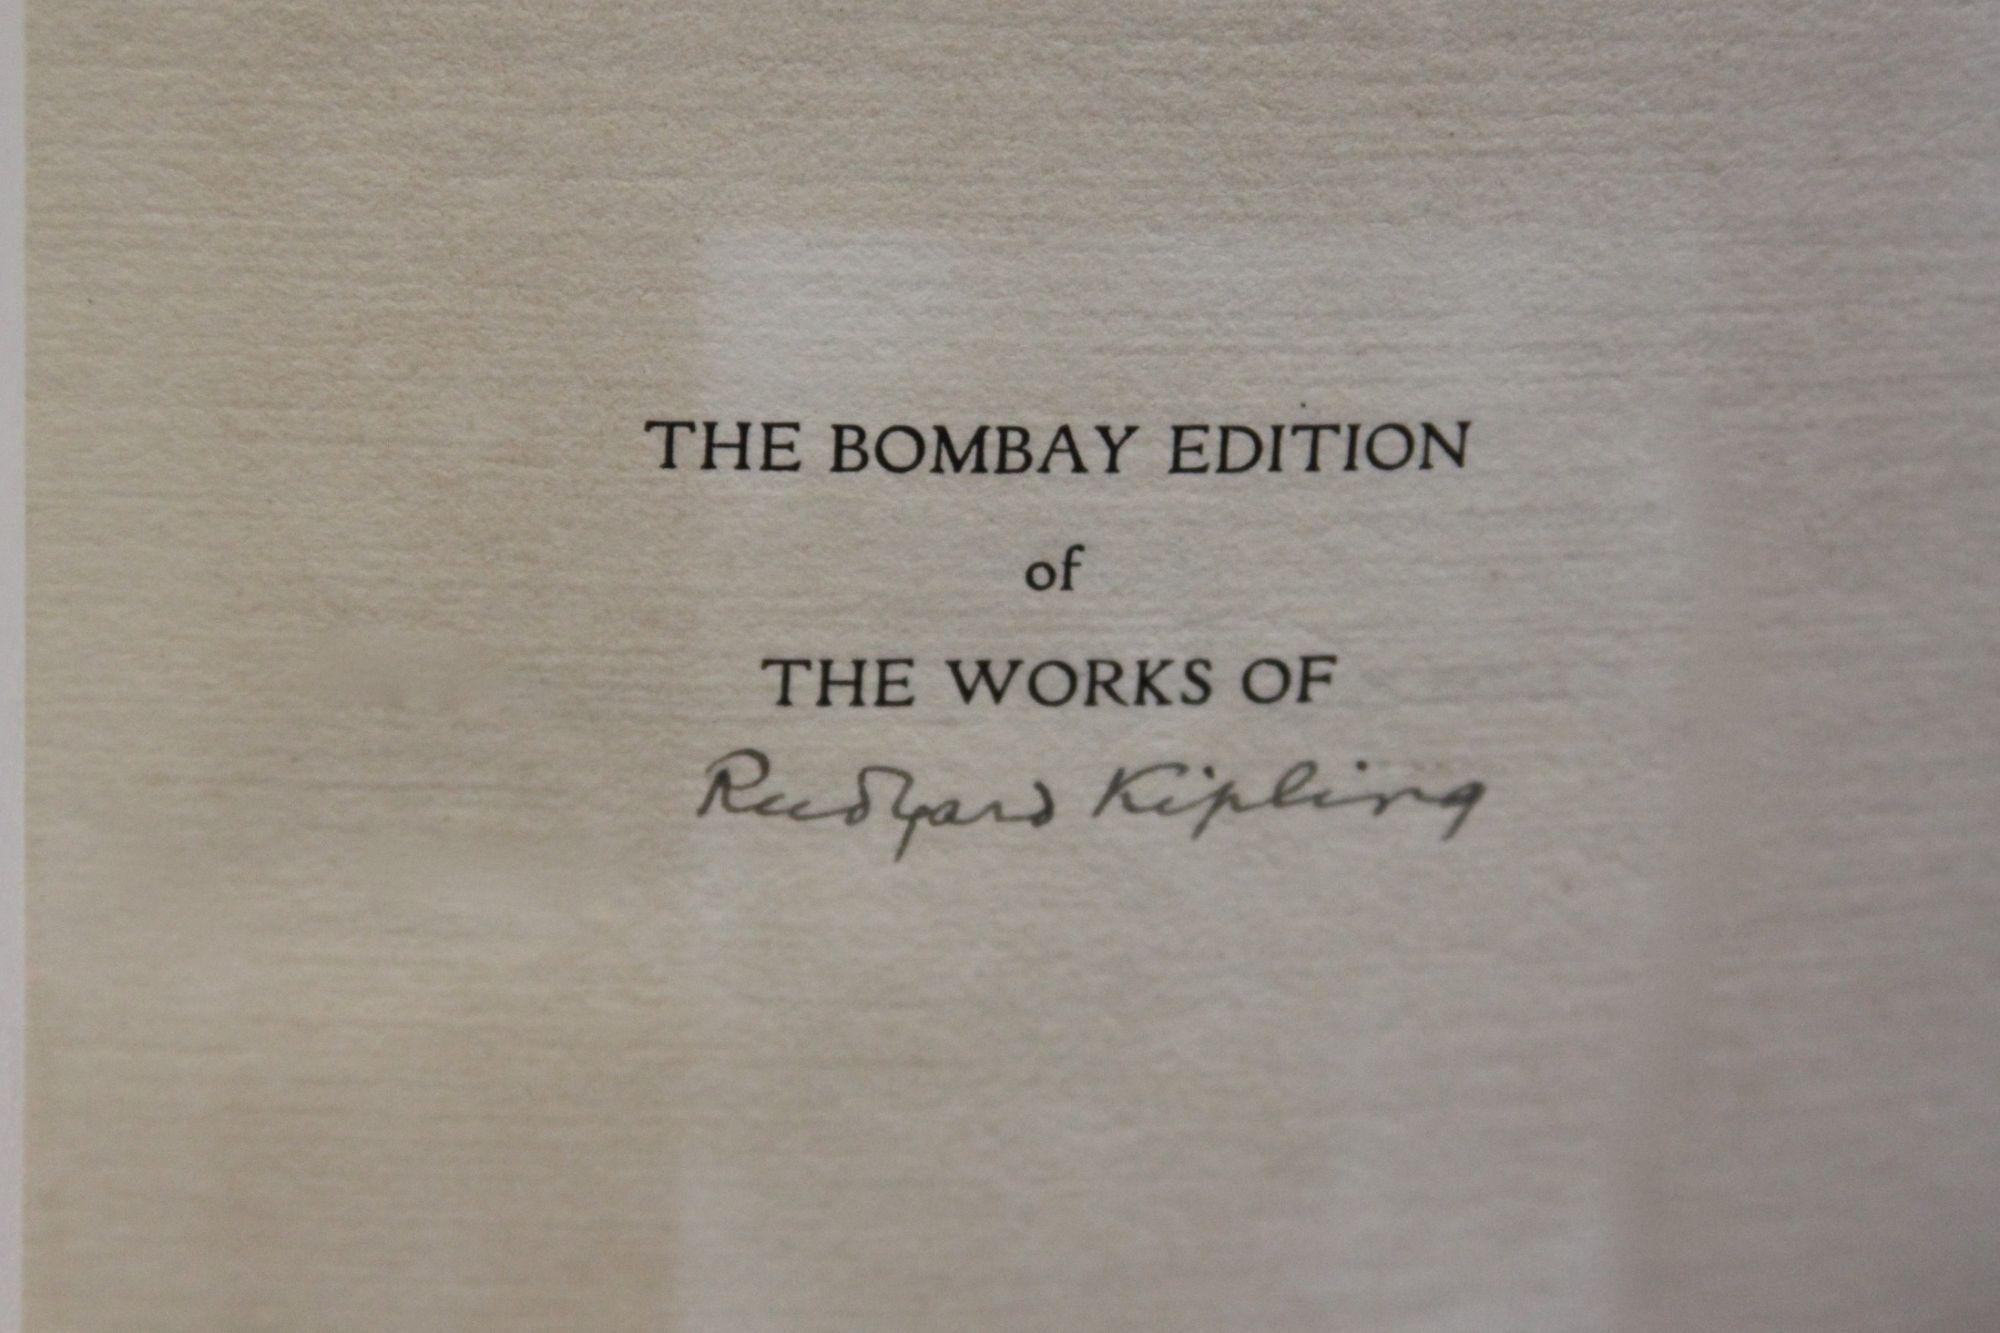 Trente et un volumes. 

D'abord publié en 25 volumes, il est passé à 31 volumes au fur et à mesure que Kipling continuait à écrire. 

Signé par Ruyard Kipling dans le premier volume sur la page de titre avant. 

Cette édition se compose de